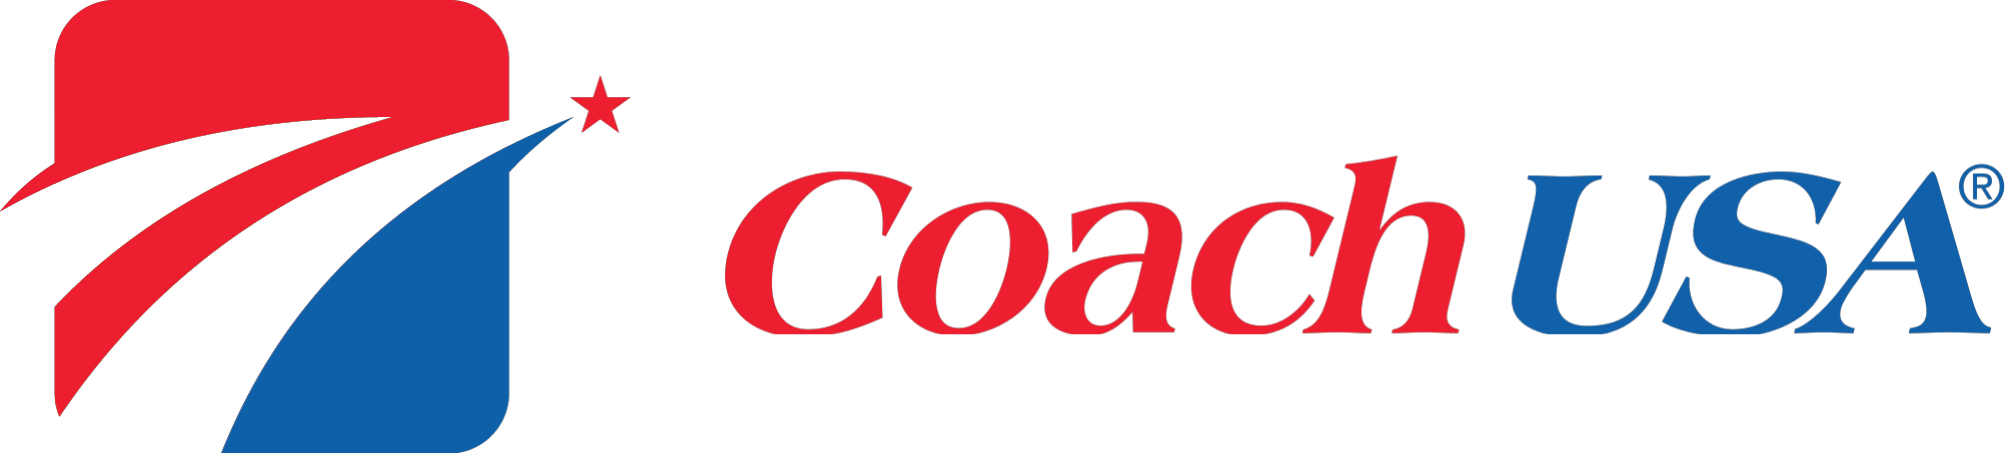 Coach USA Logo - Welcome to Coach USA - Casino Trips